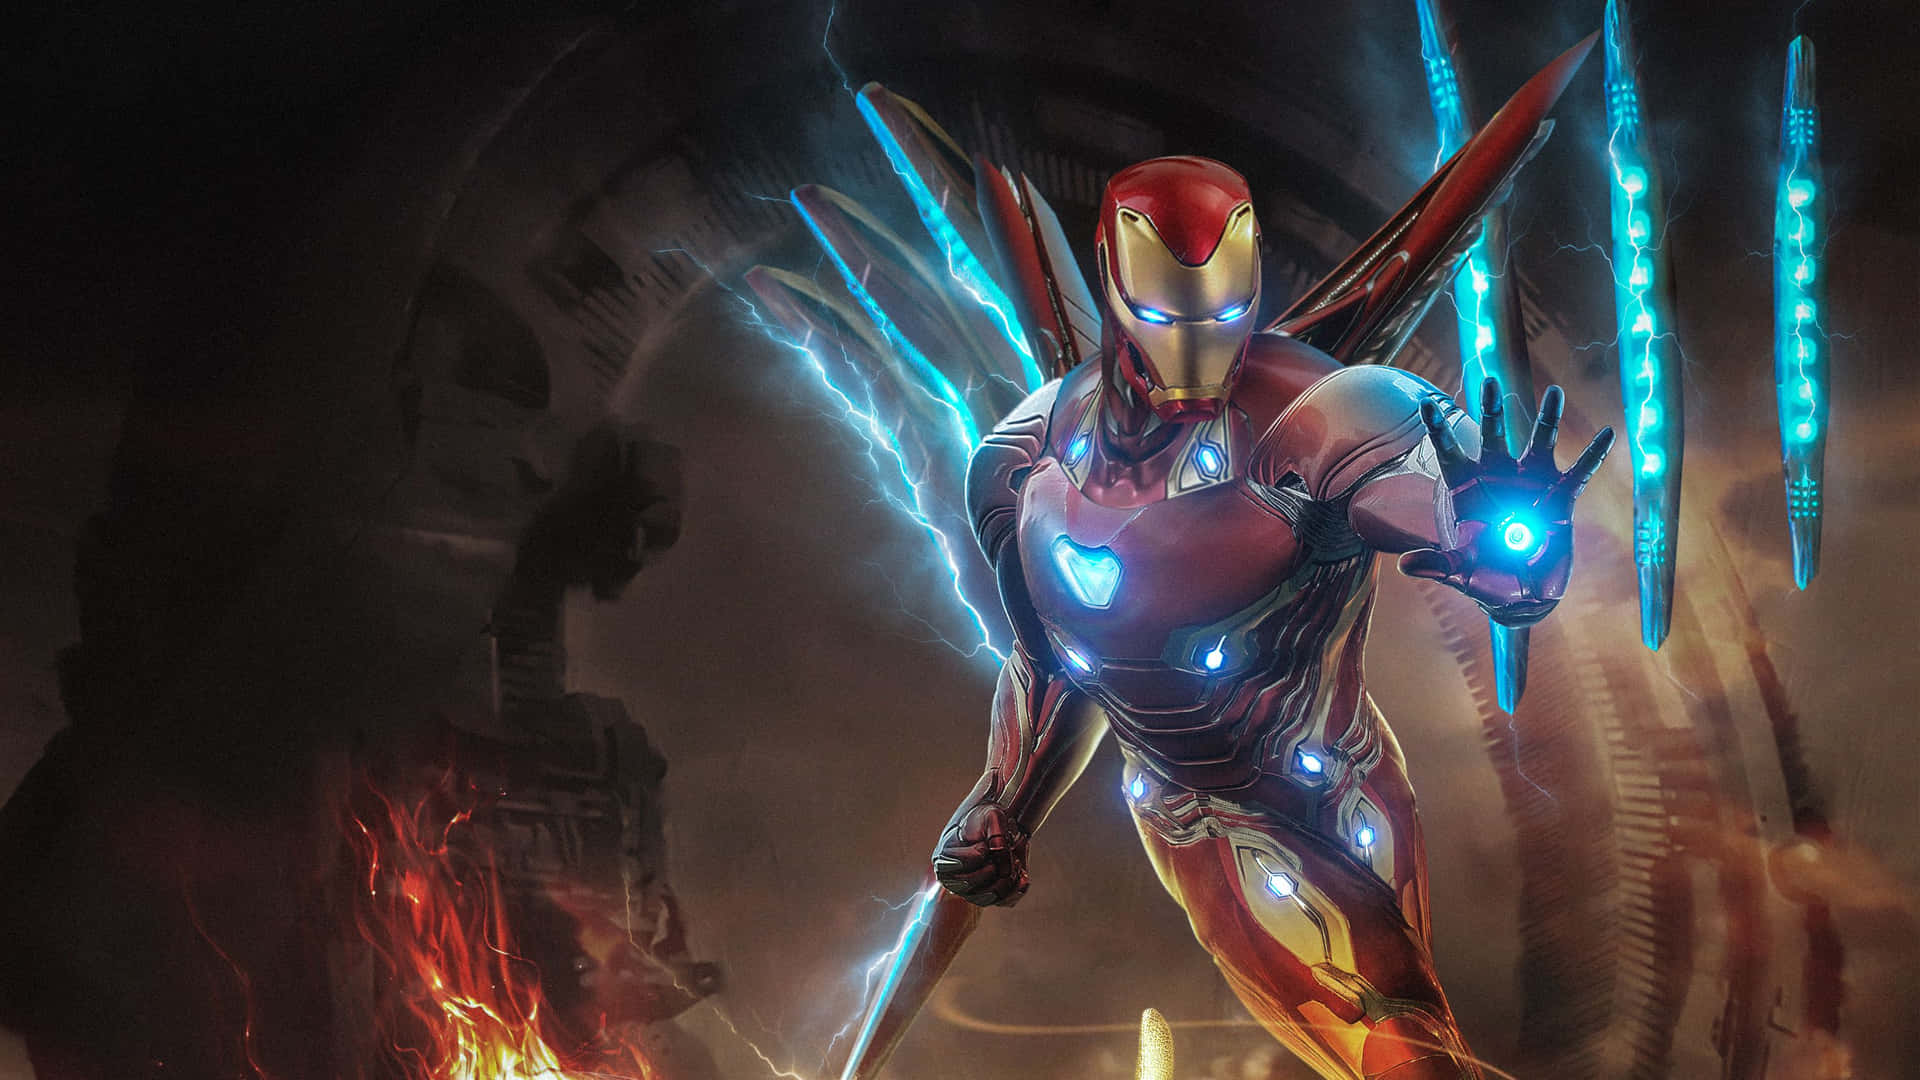 Marvels Avengers Leak Reveals Iron Man's Iconic Damaged Suit From Endgame